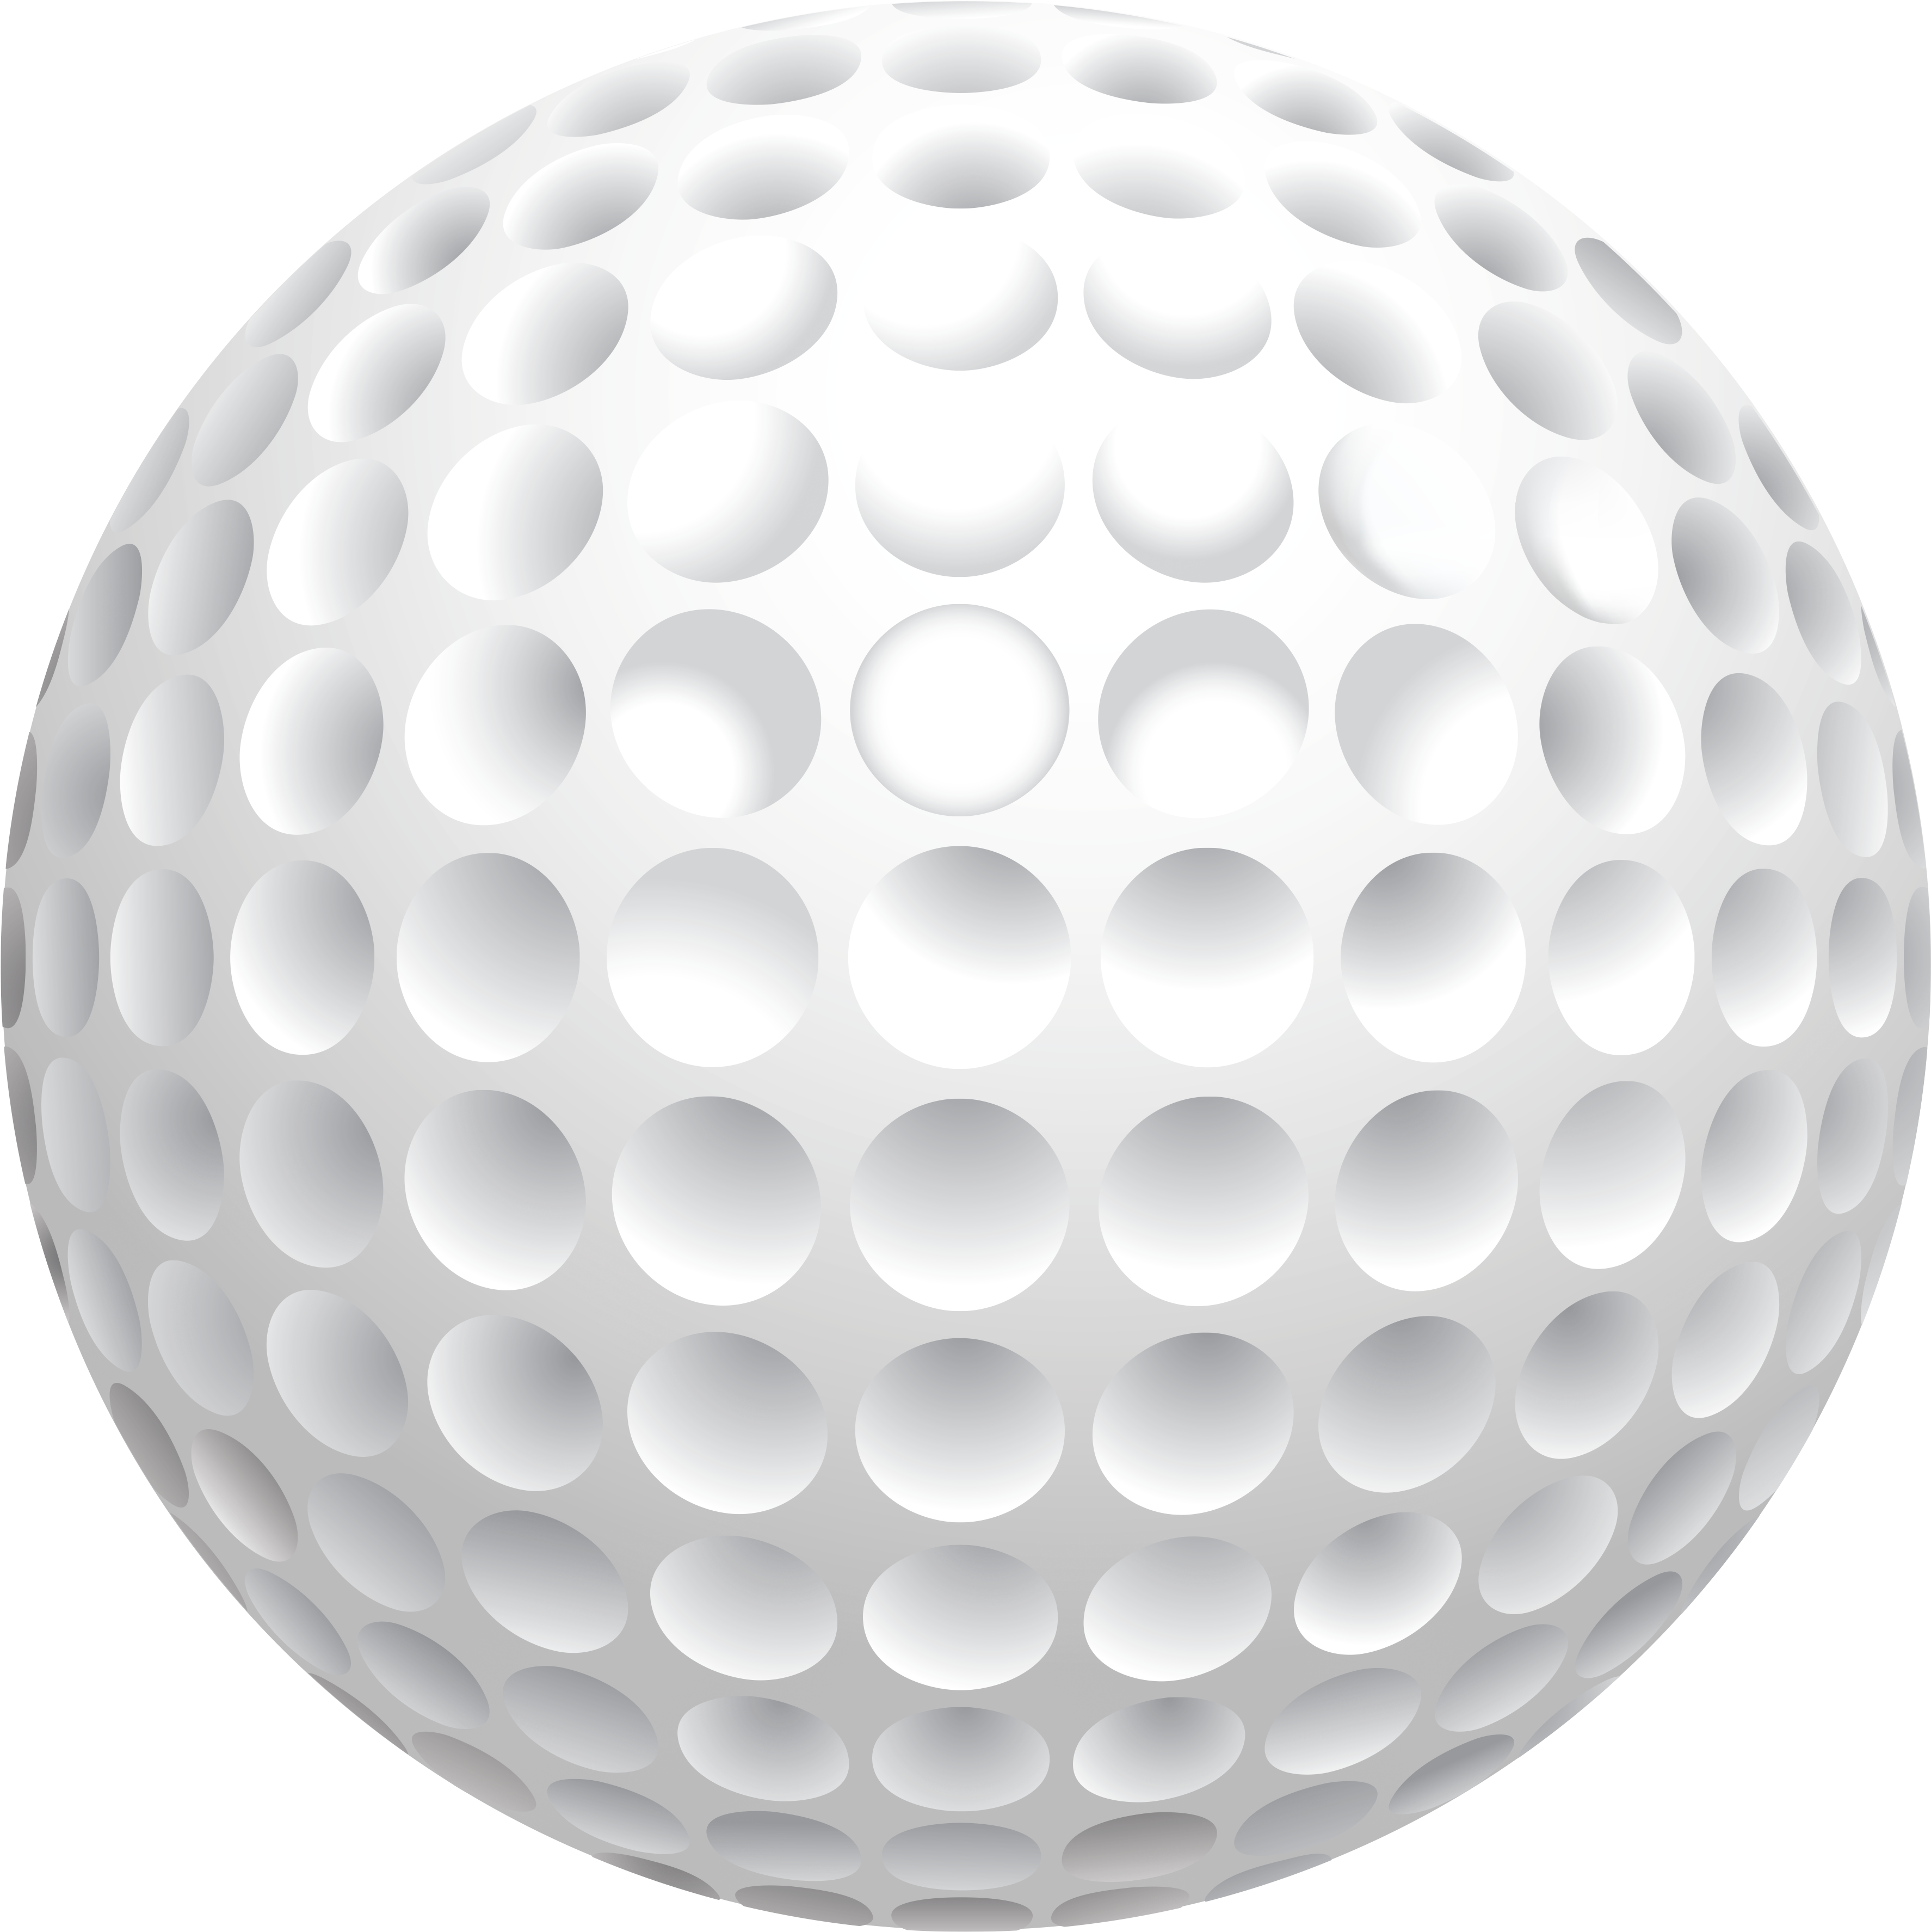 A Close Up Of A Golf Ball